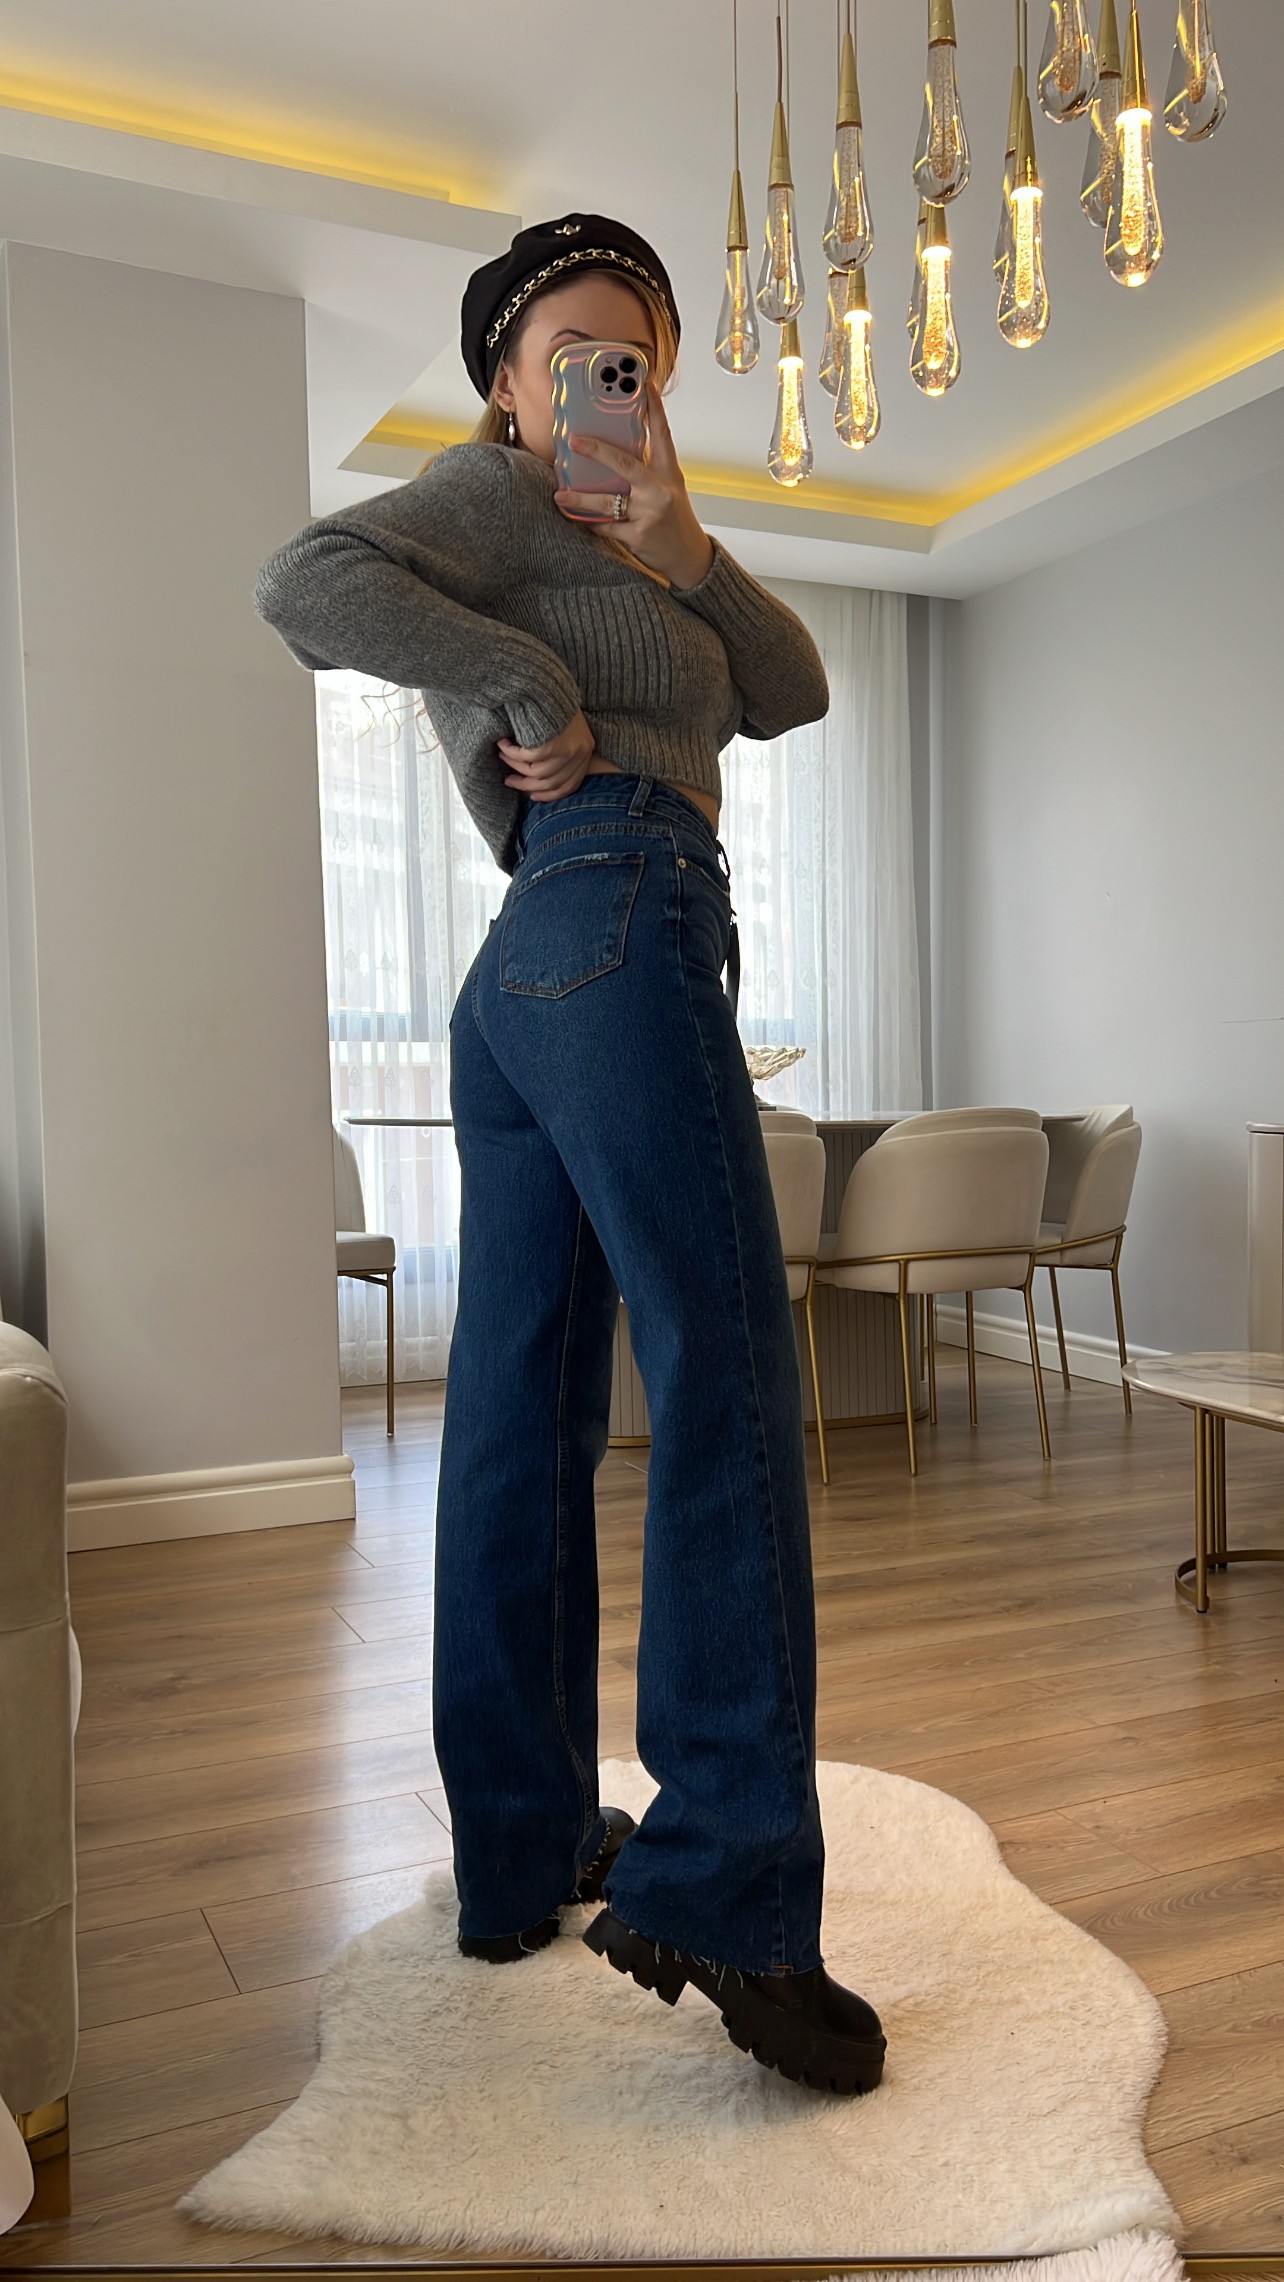 Olivia Lacivert Yıkama 90's Straight Vintage Jeans